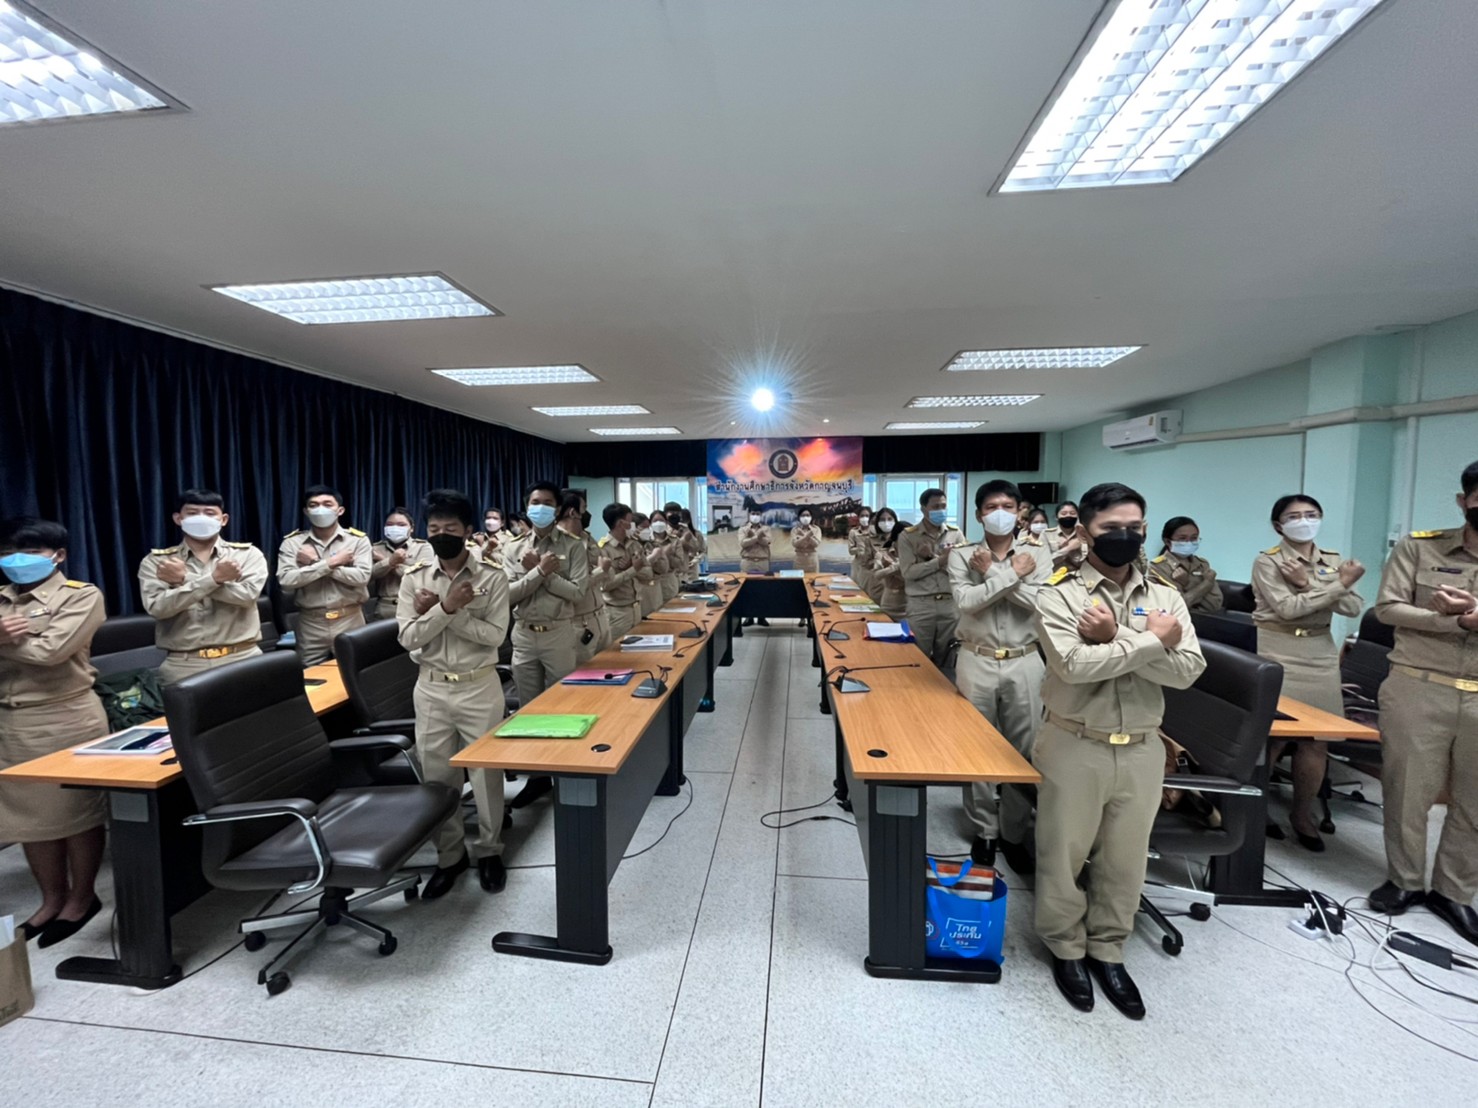 สำนักงานศึกษาธิการจังหวัดกาญจนบุรี  รับรายงานตัวและปฐมนิเทศข้าราชการครูบรรจุใหม่ ตำแหน่งครูผู้ช่วย จำนวน 29 ราย